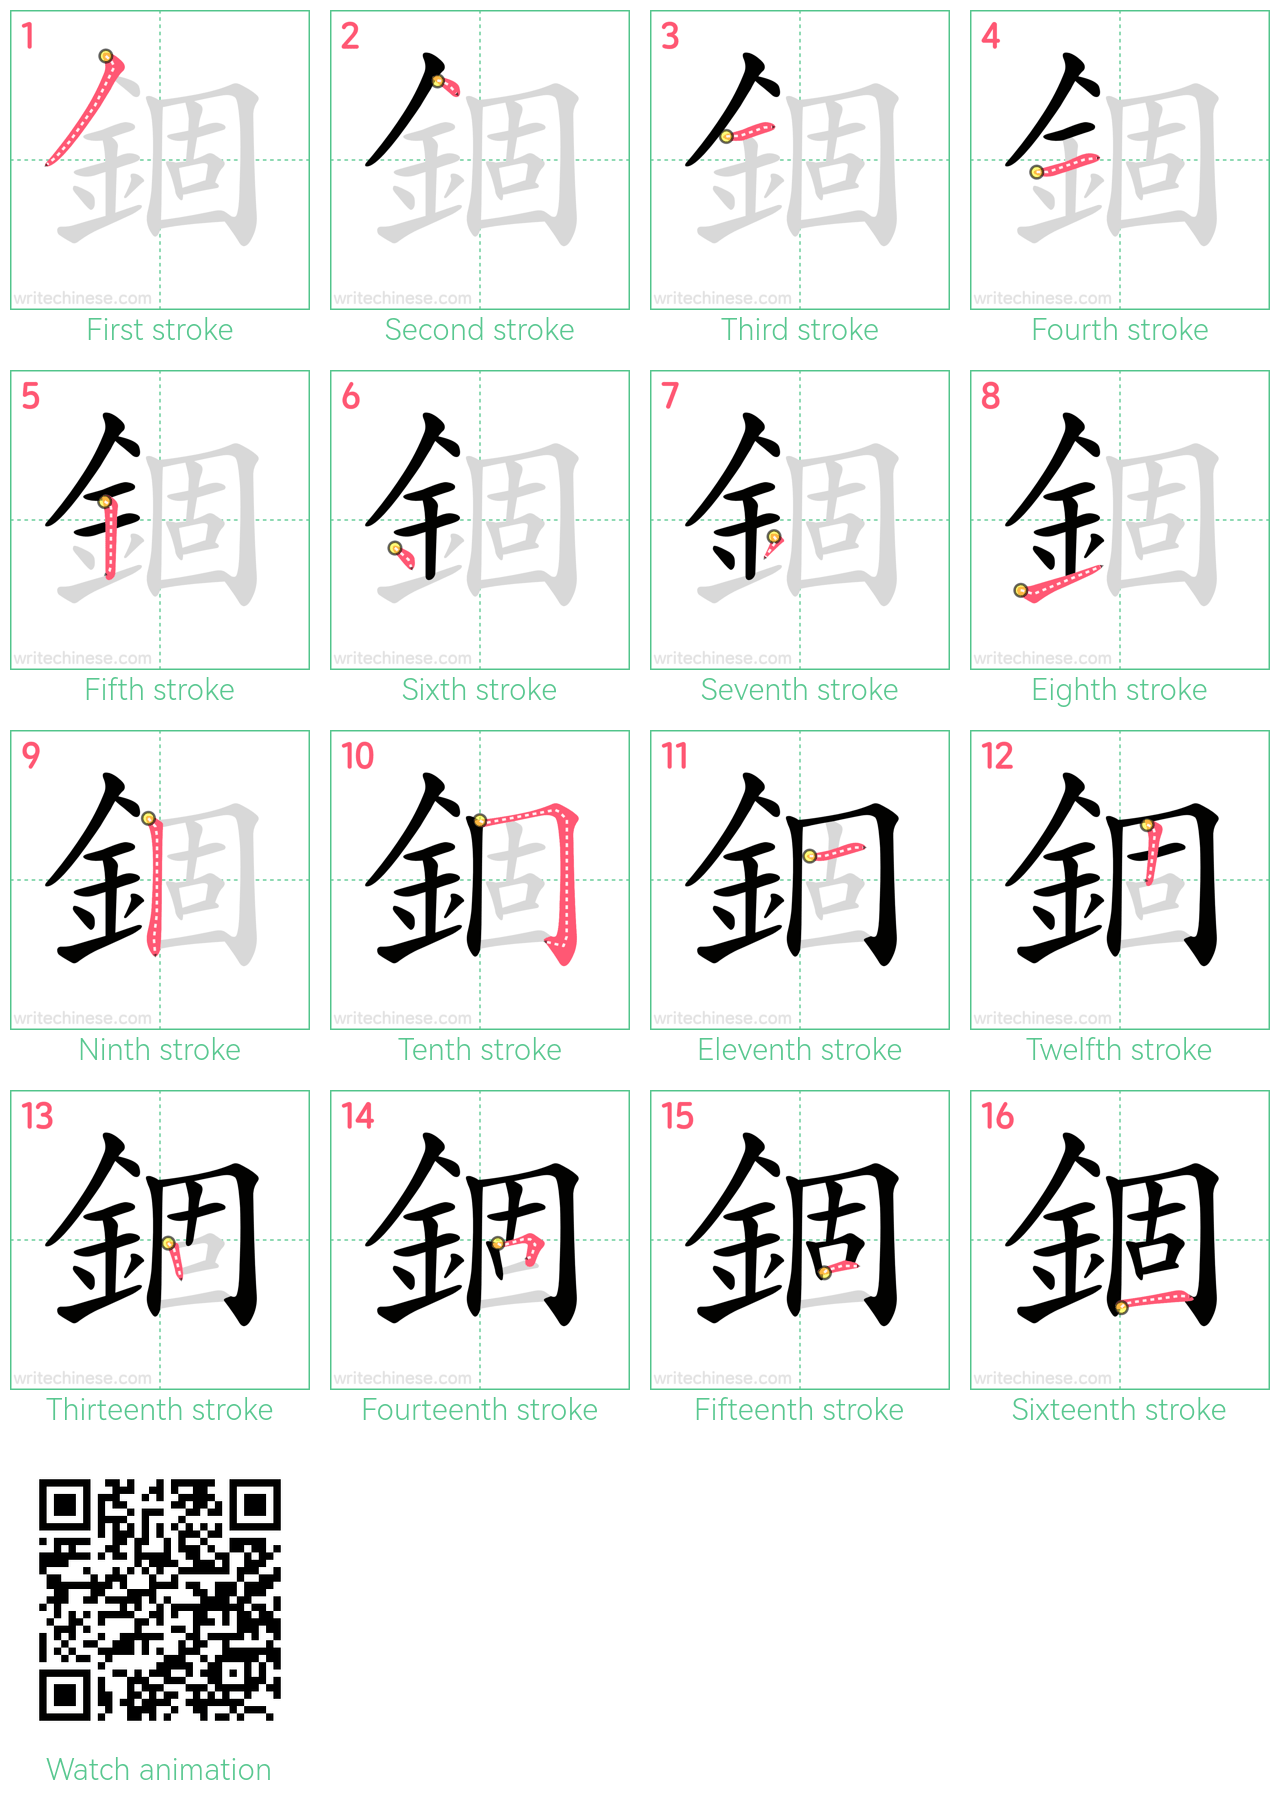 錮 step-by-step stroke order diagrams